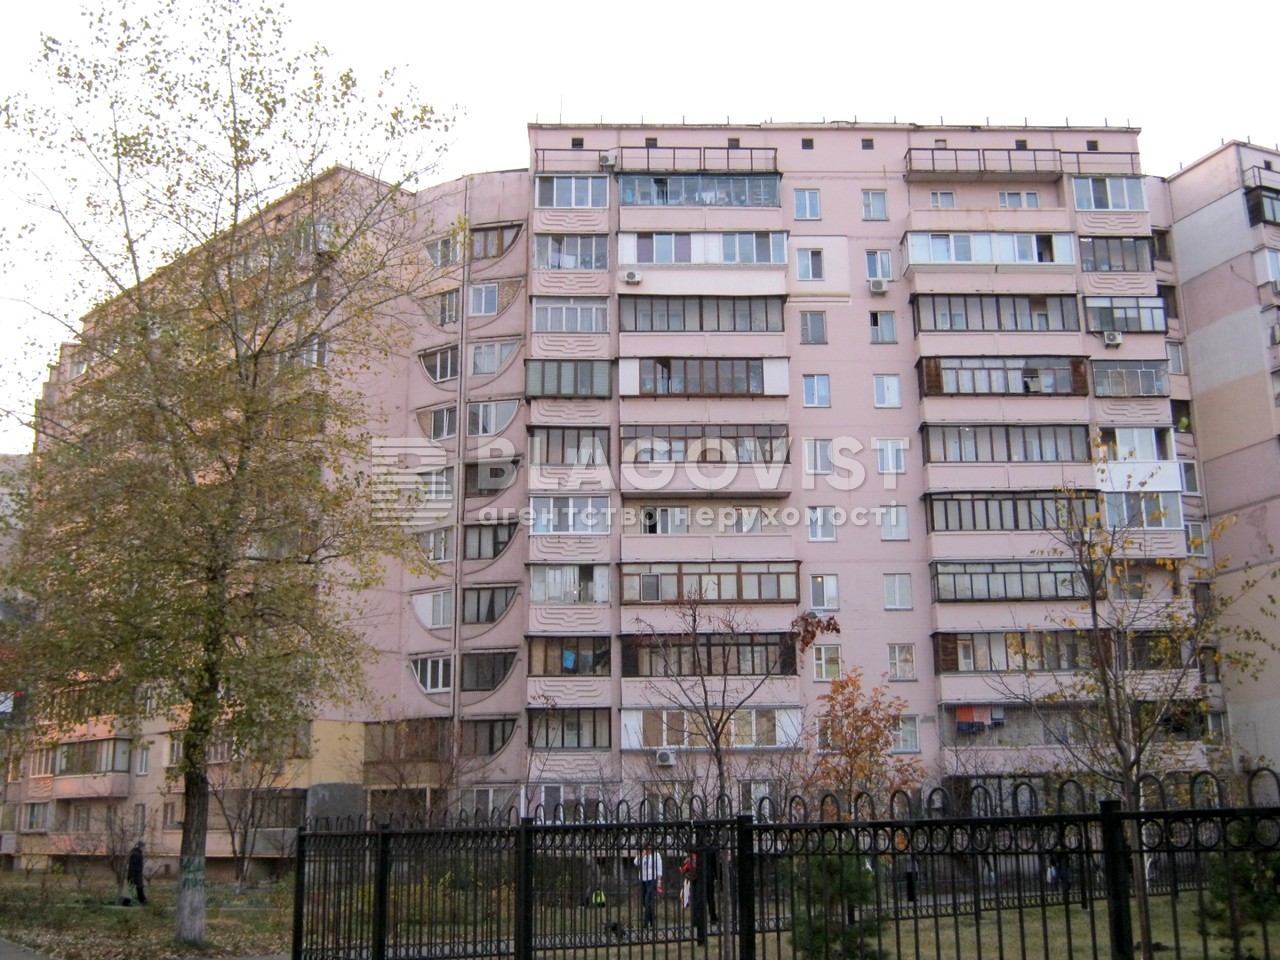  Нежилое помещение, Княжий Затон, Киев, R-41316 - Фото 1